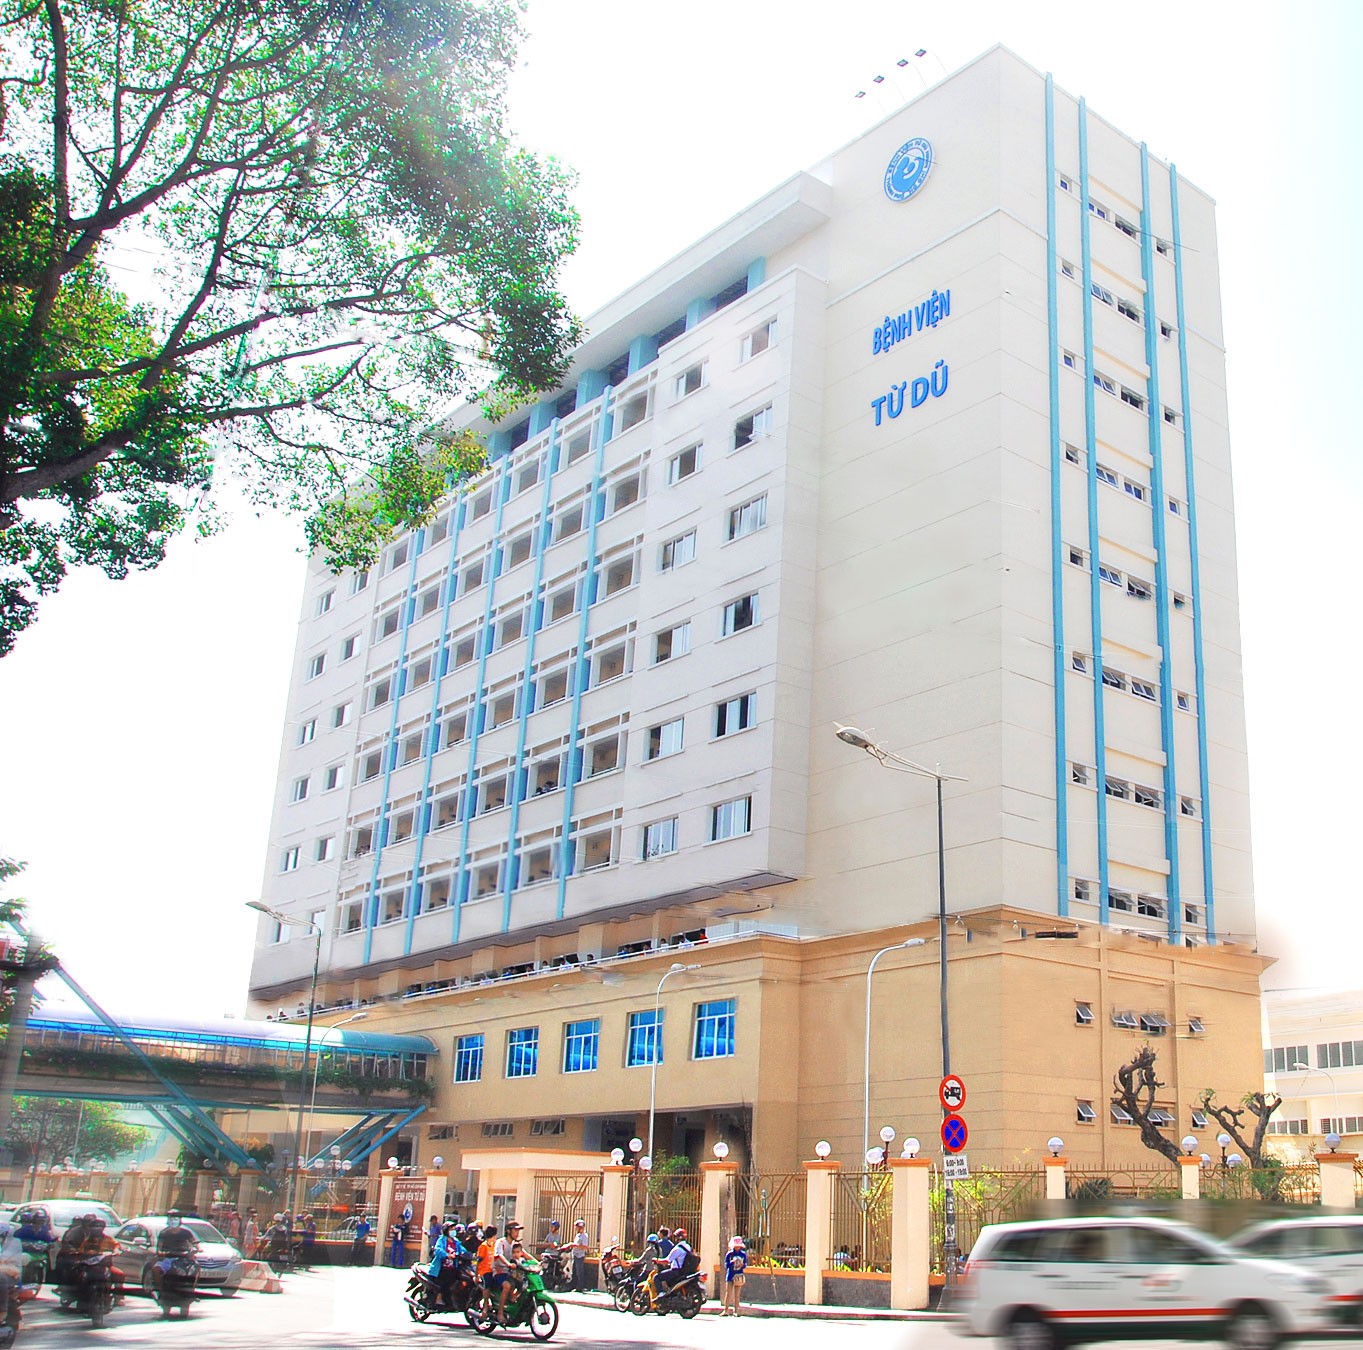 Bệnh viện Từ Dũ (Nguồn: tudu.com.vn)